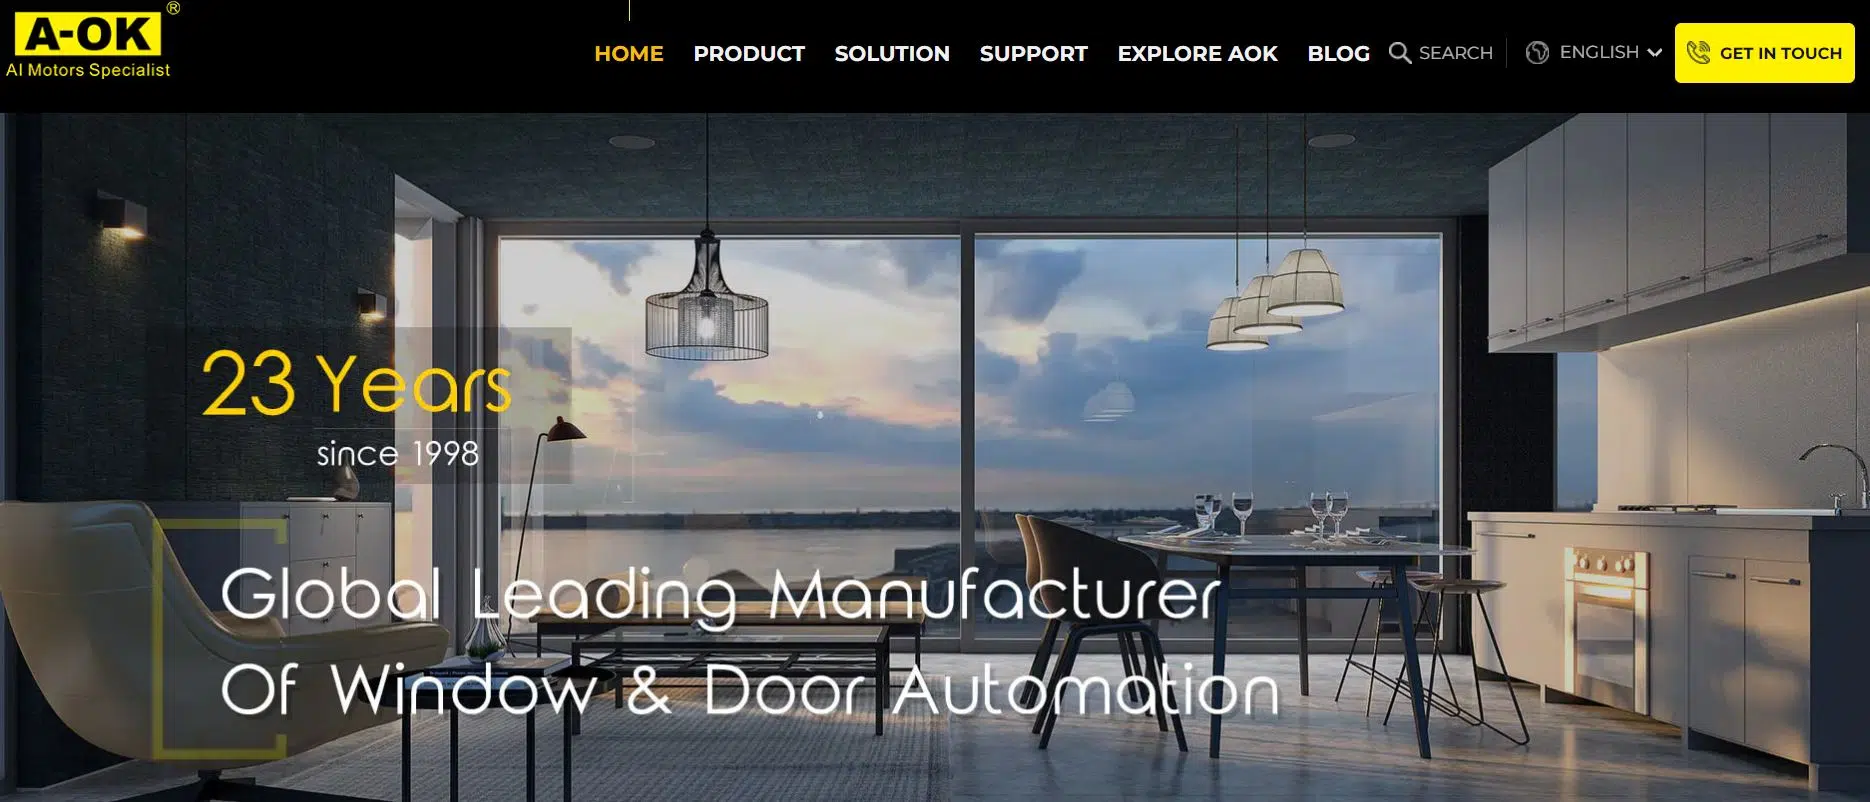 La page d'accueil d'a-ok - fabricant et fournisseur mondial de panneaux solaires de fenêtres, portes et automatismes.